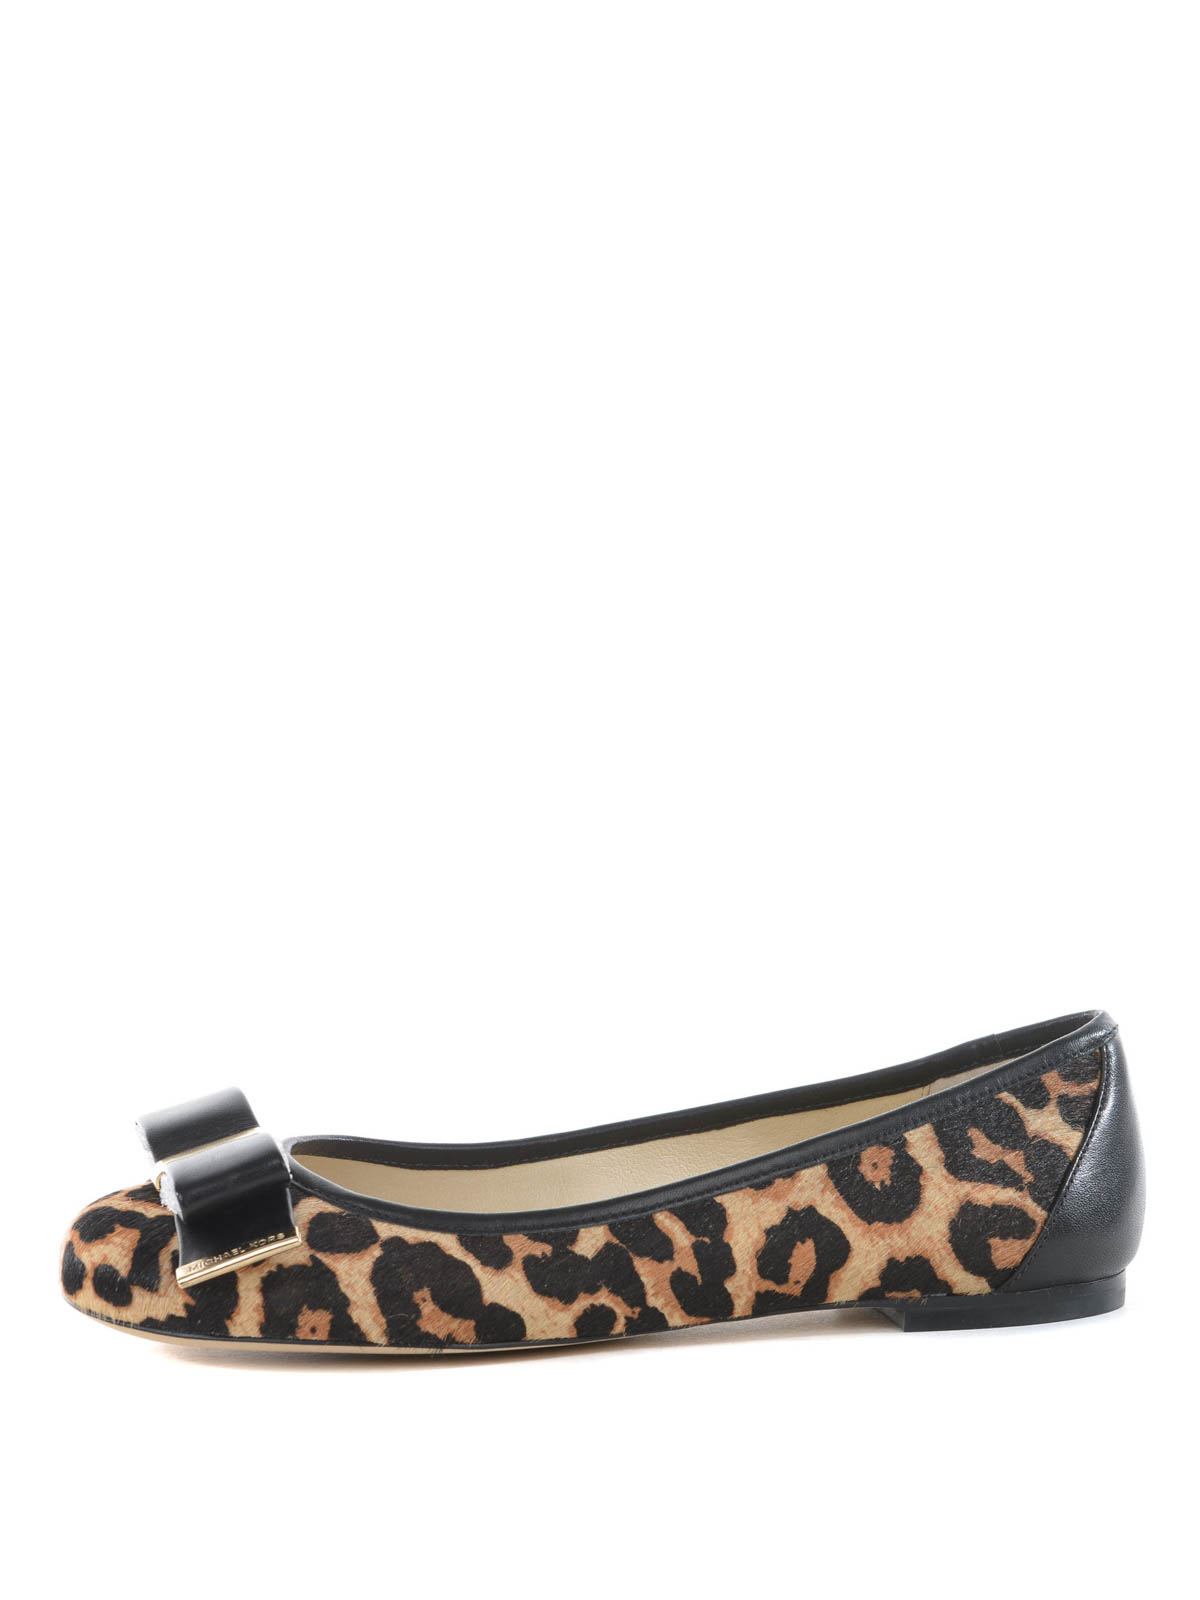 Flat shoes Michael Kors - Leopard patterned flat shoes - 40T4DPFP1H270